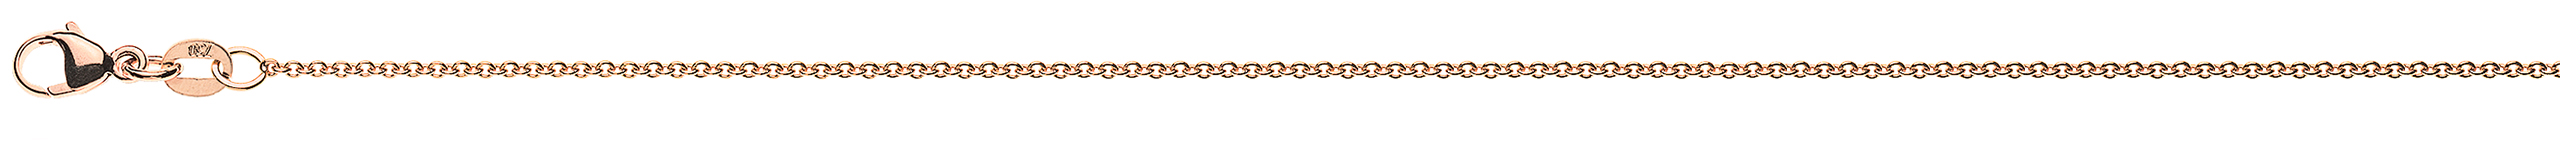 AURONOS Prestige Bracelet ancre rond or rose 18K 19cm 1.3mm